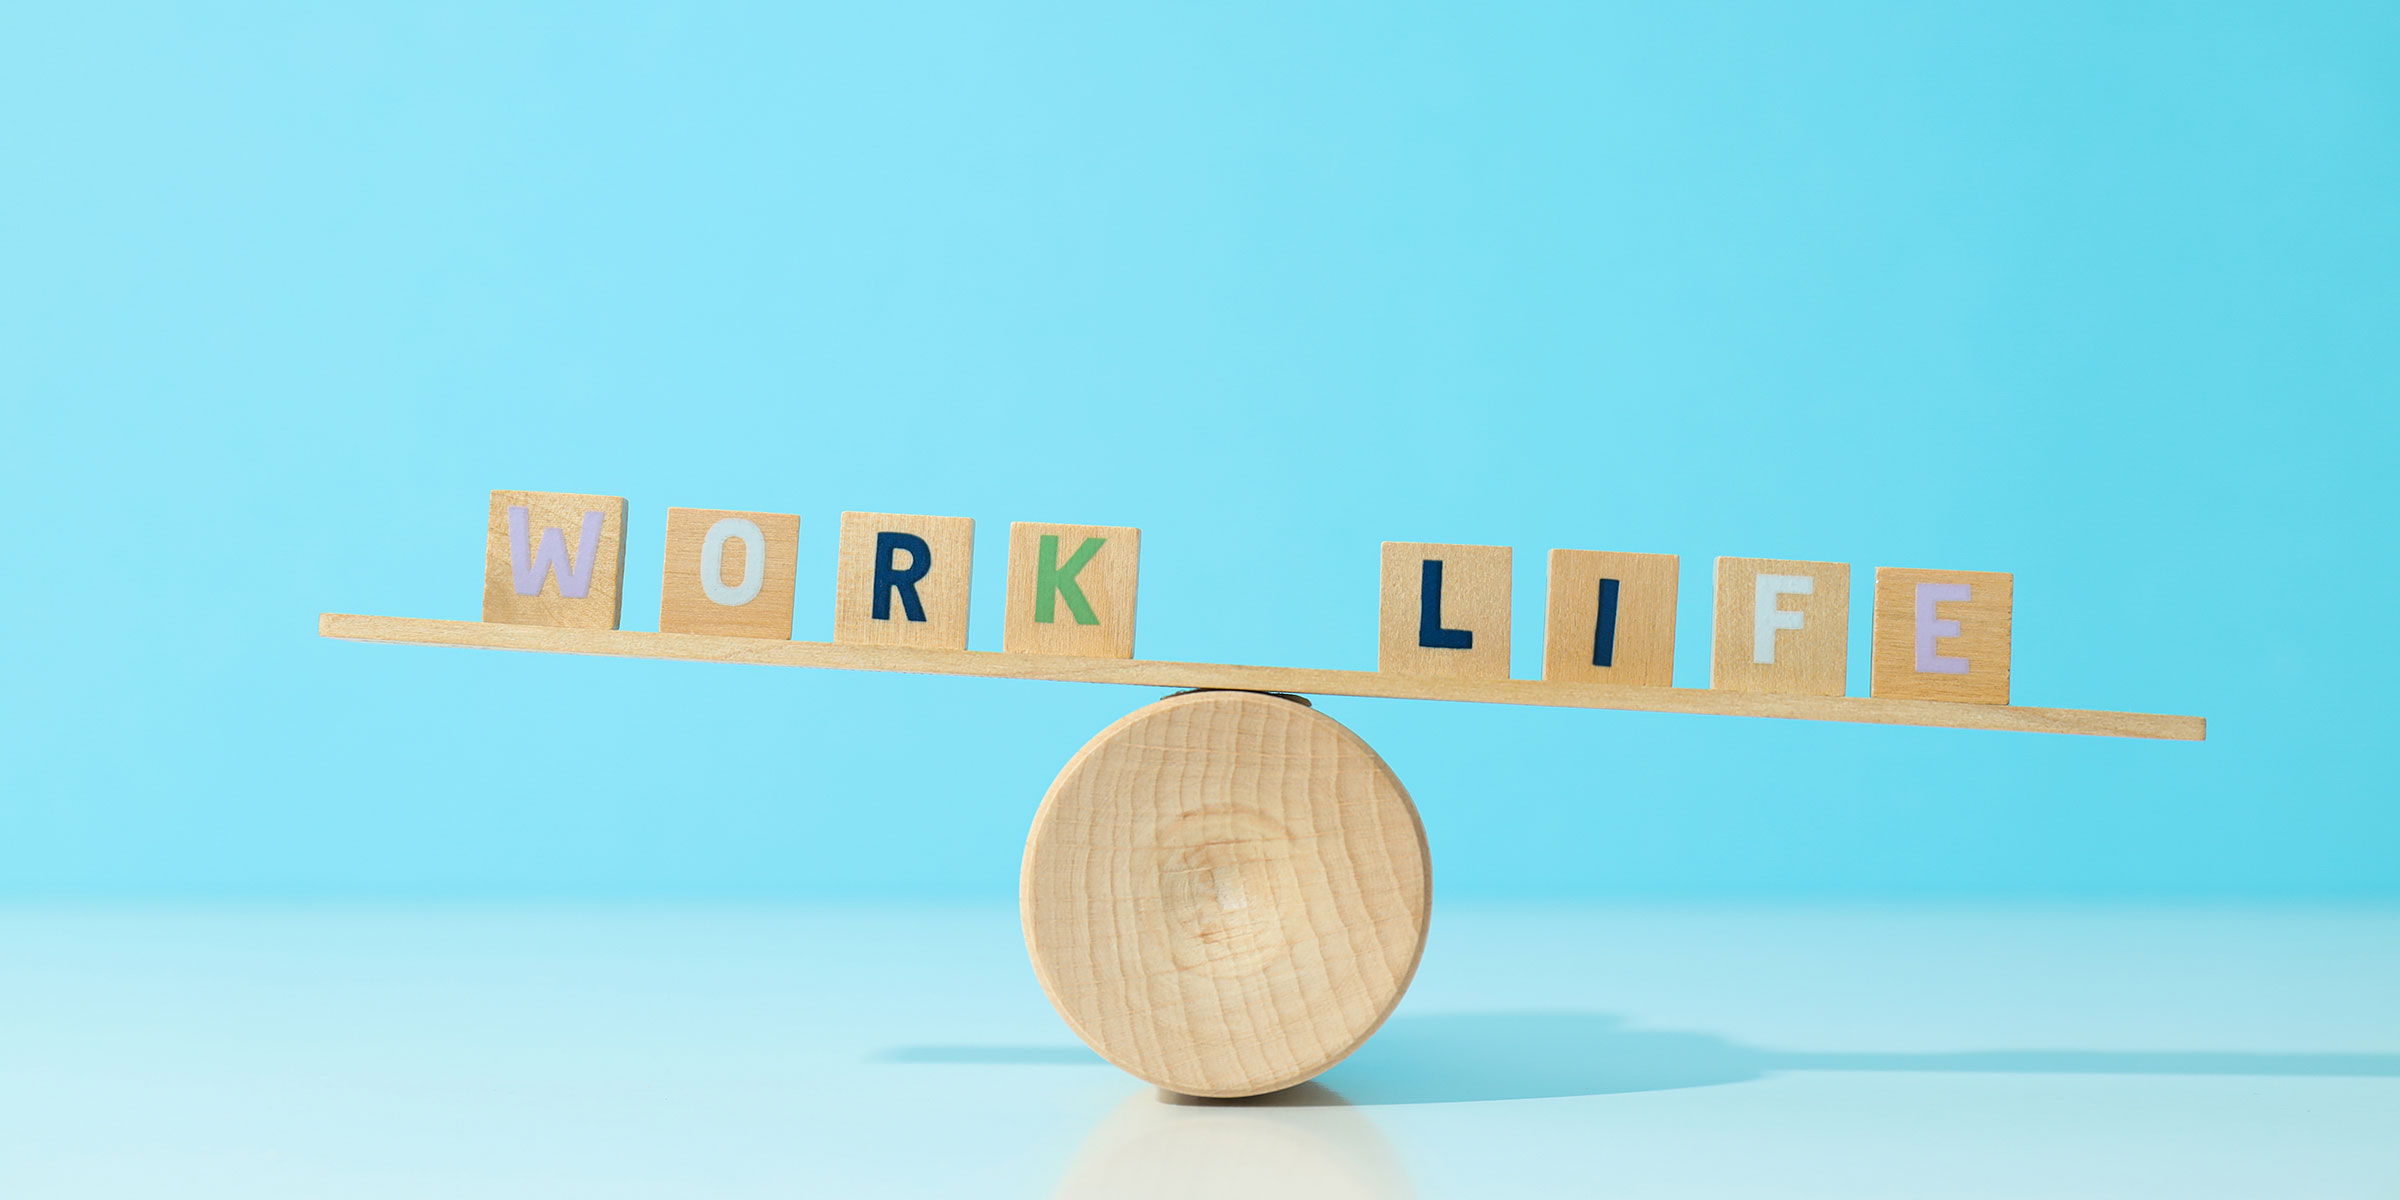 Work-Life-Balance während der Ausbildung